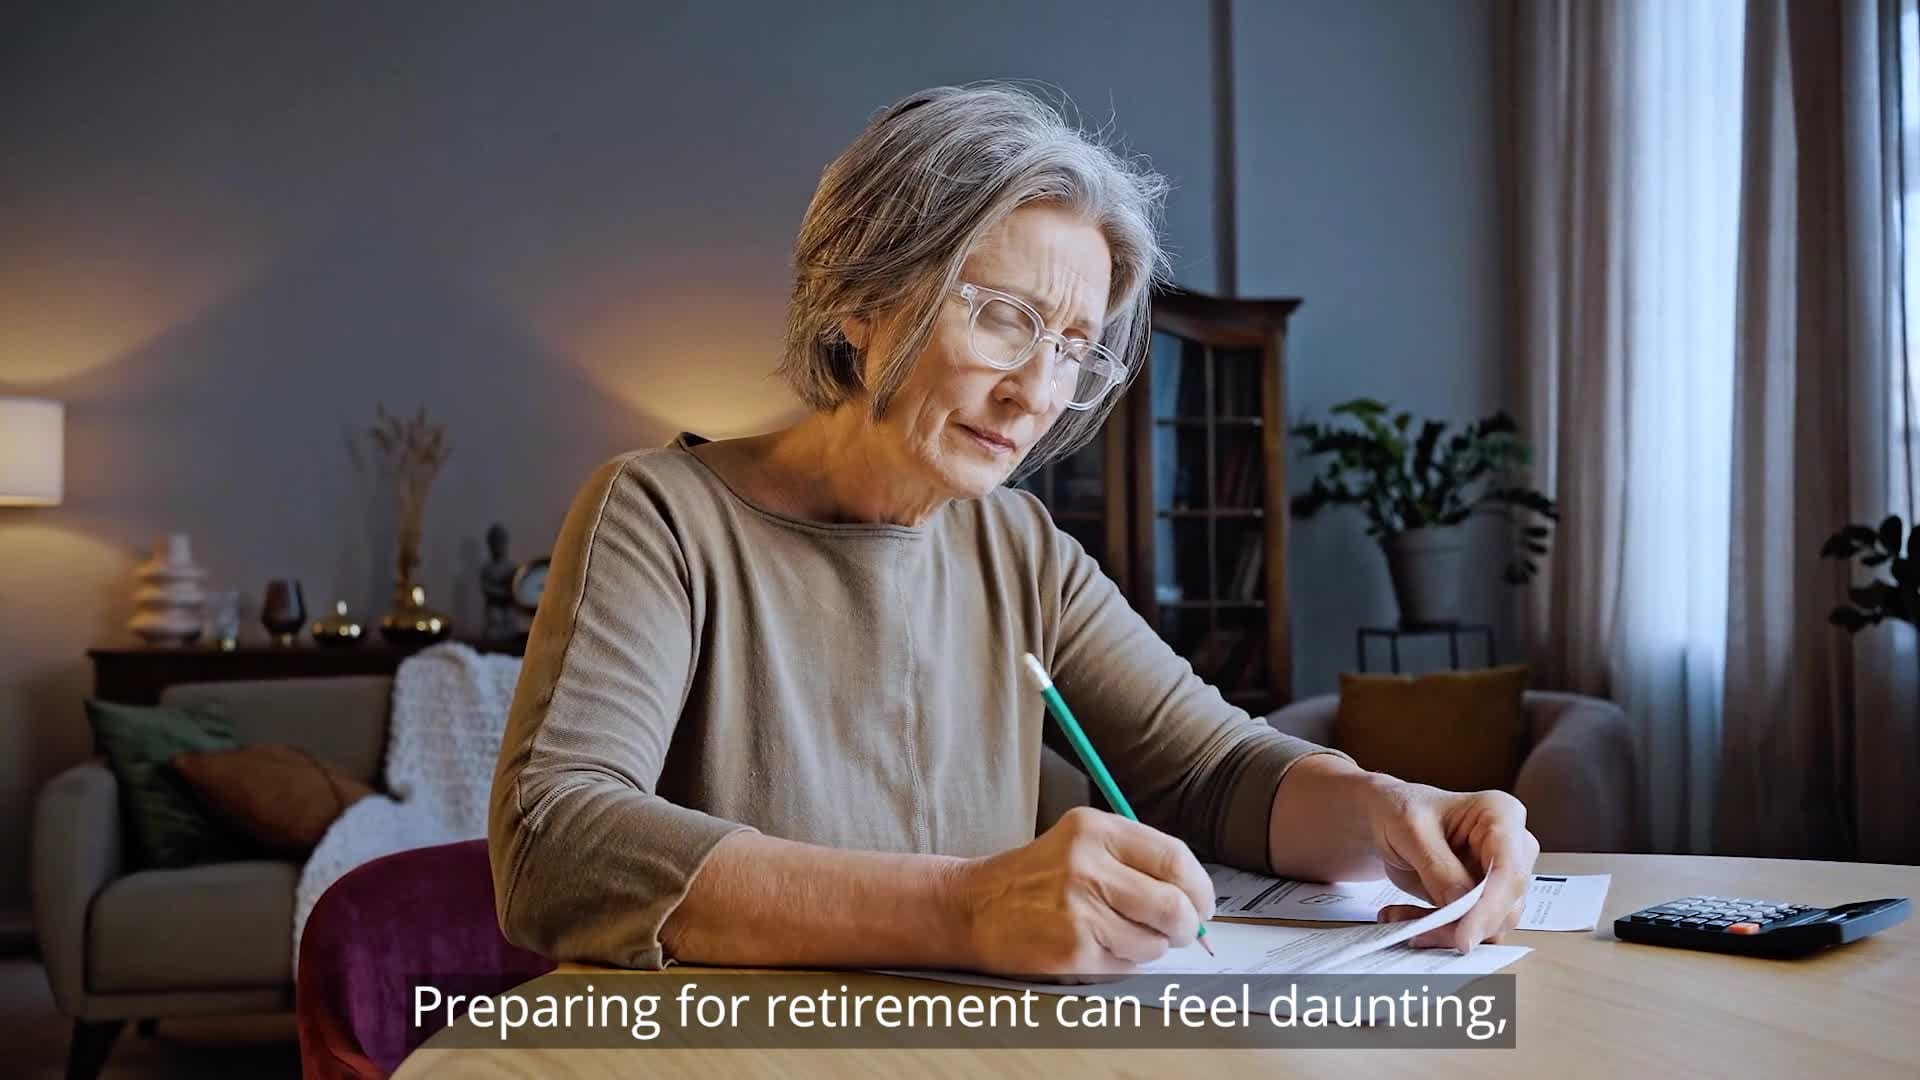 Pre-Retirement Checklist